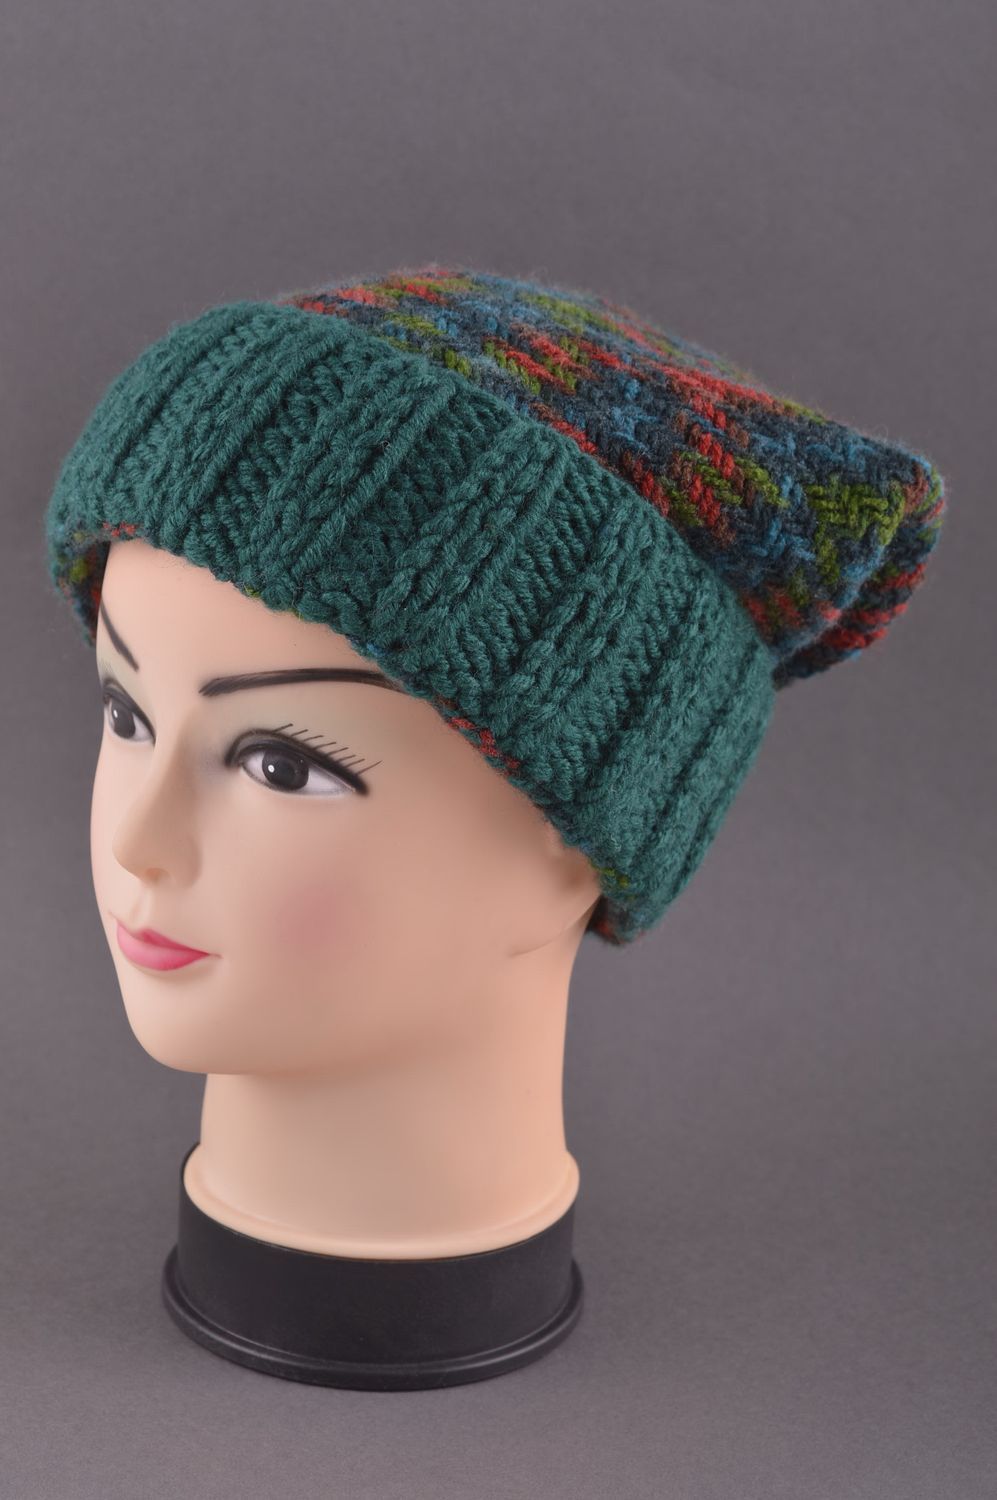 Knitted hat handmade knitted accessories warm winter hat women woolen hat photo 1